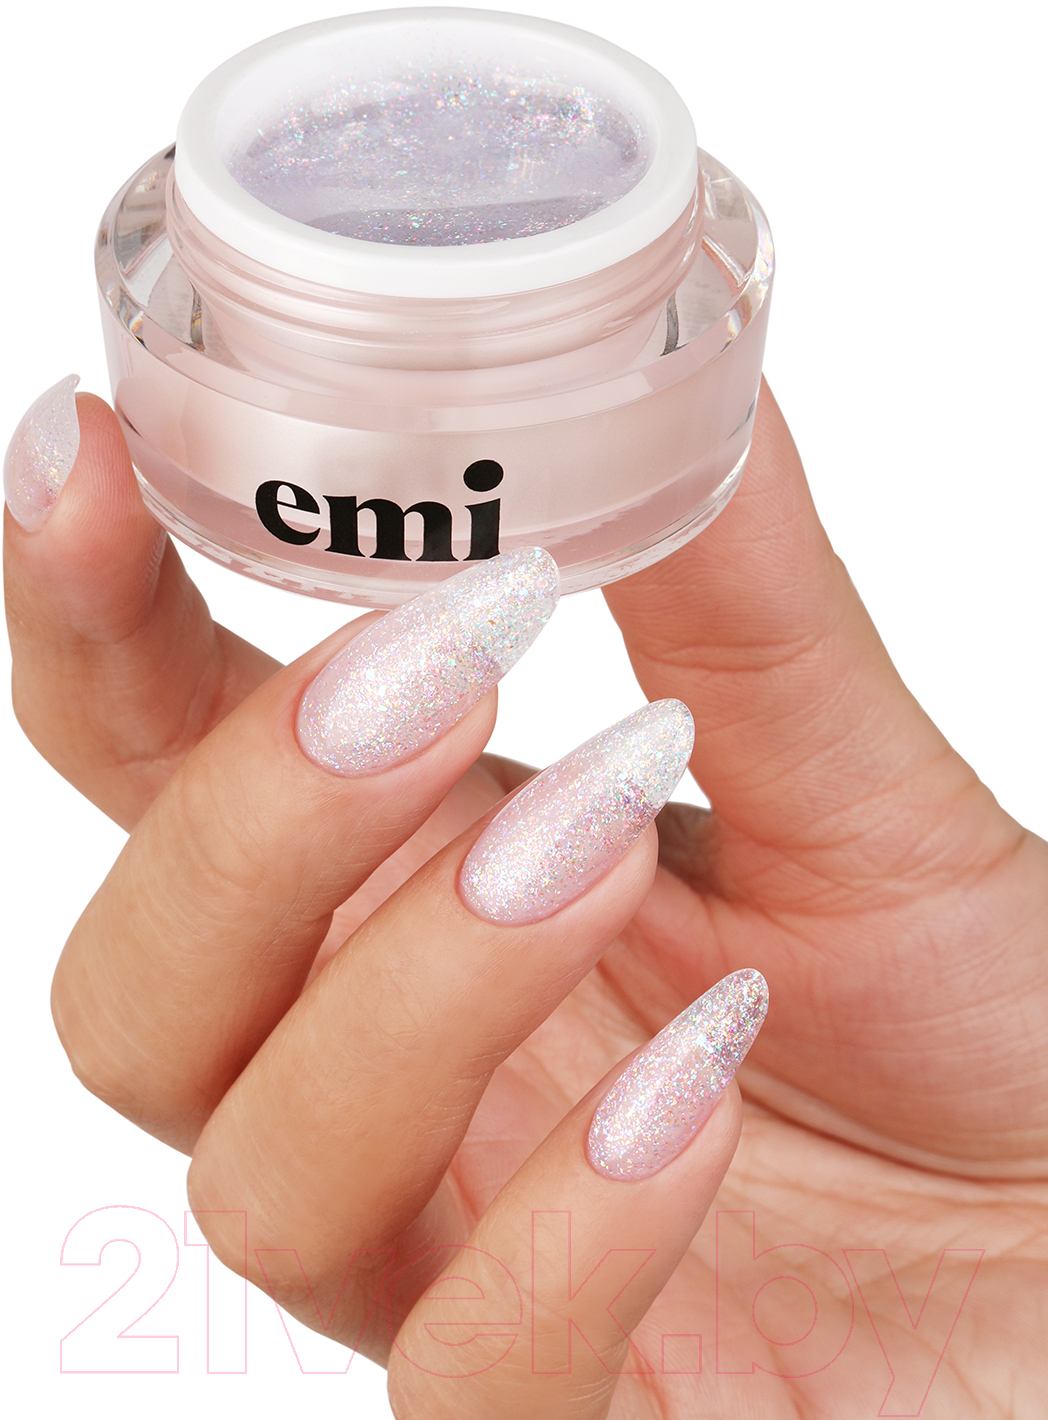 Моделирующий гель для ногтей E.Mi Prism Gel